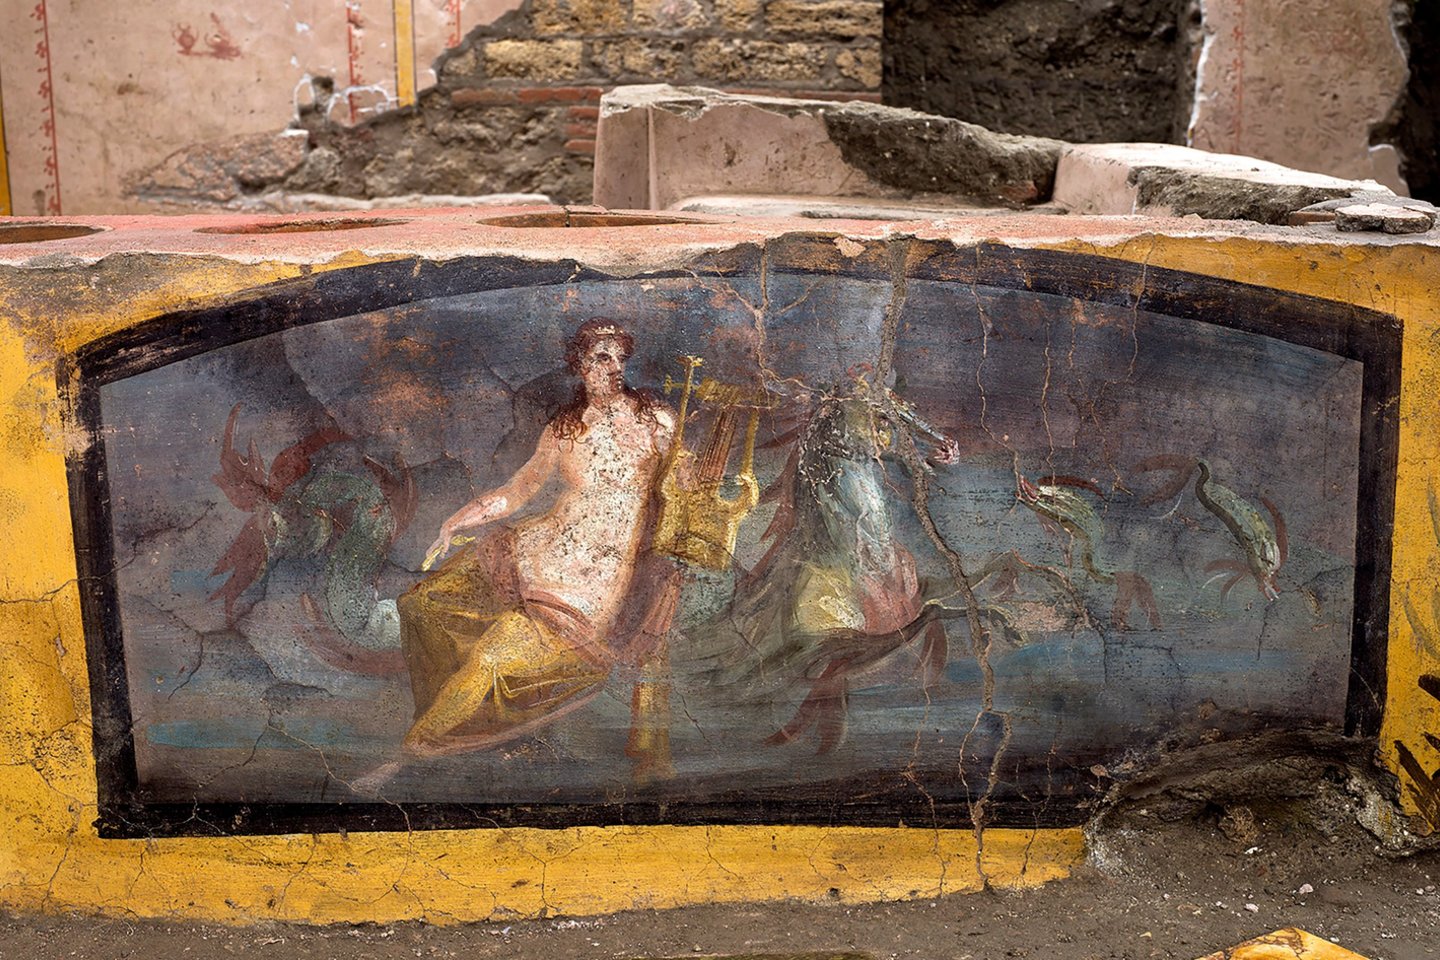  Praeivius į užeigą viliojo nuo gatvės pusės matoma tapyta freska su pusnuoge graikų jūrų nimfa, kuri vandenyno gelmėse groja arfa jūrų žirgams.<br> AFP / Scanpix nuotr.